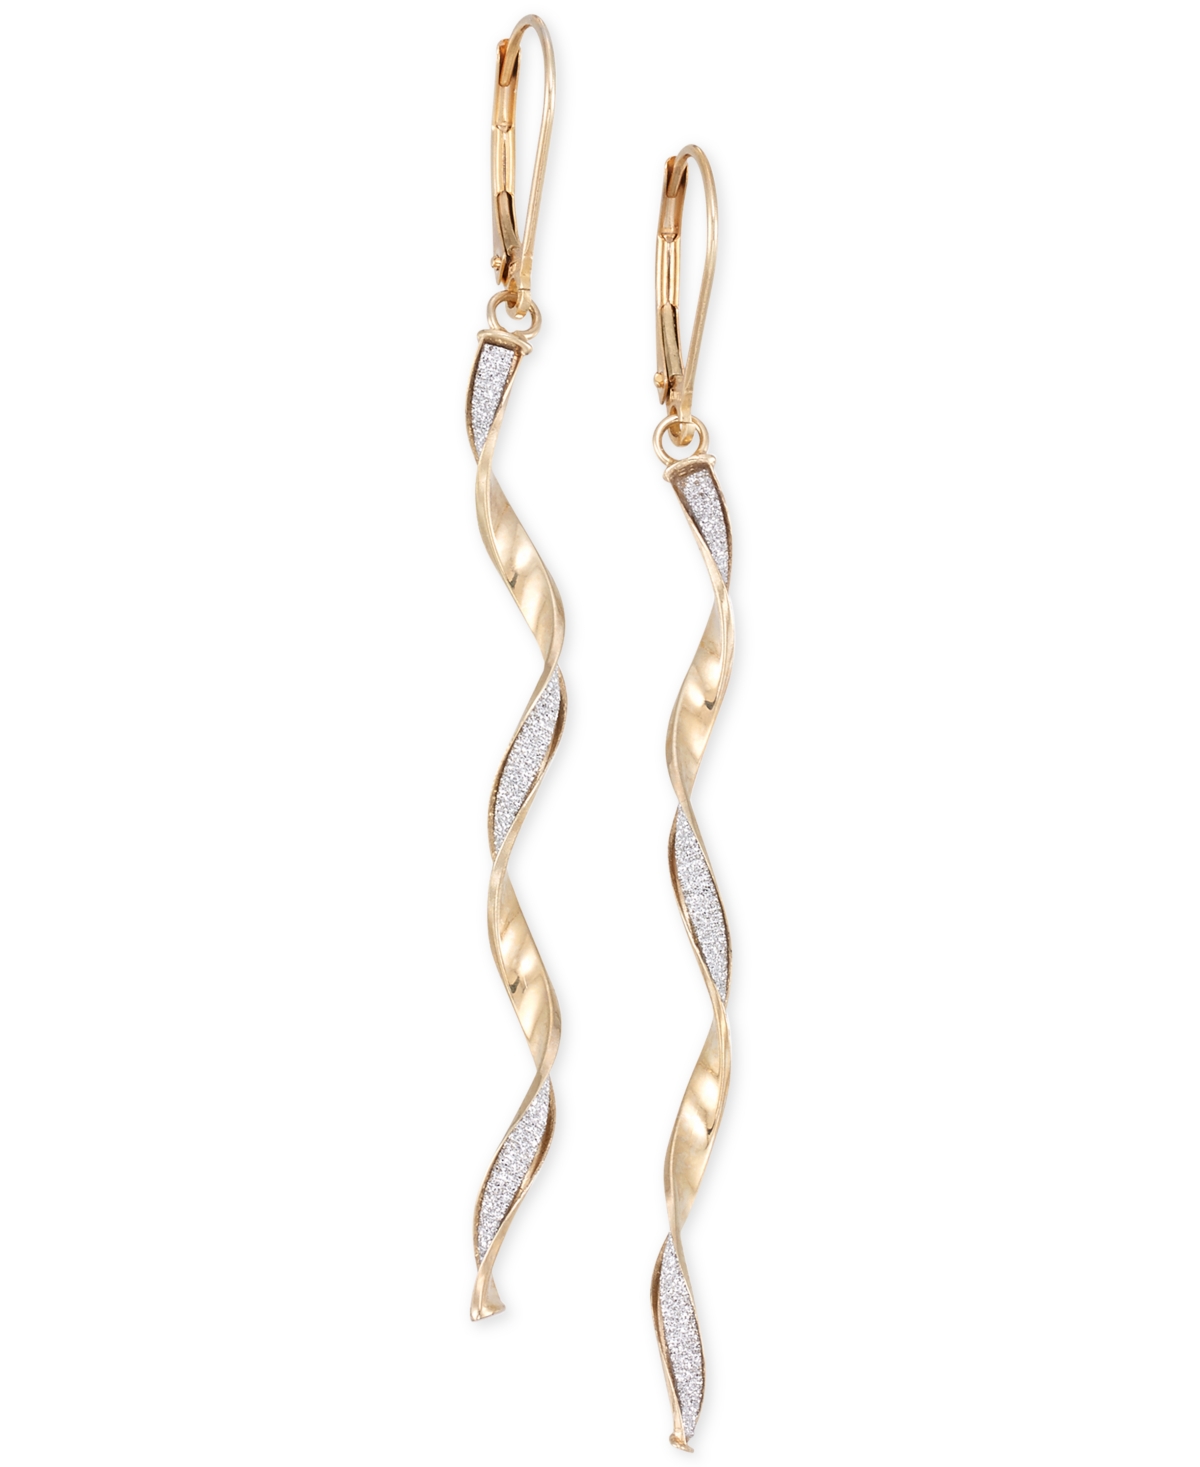 Twist Glitter Long Drop Earrings in 14k Gold - Yellow Gold